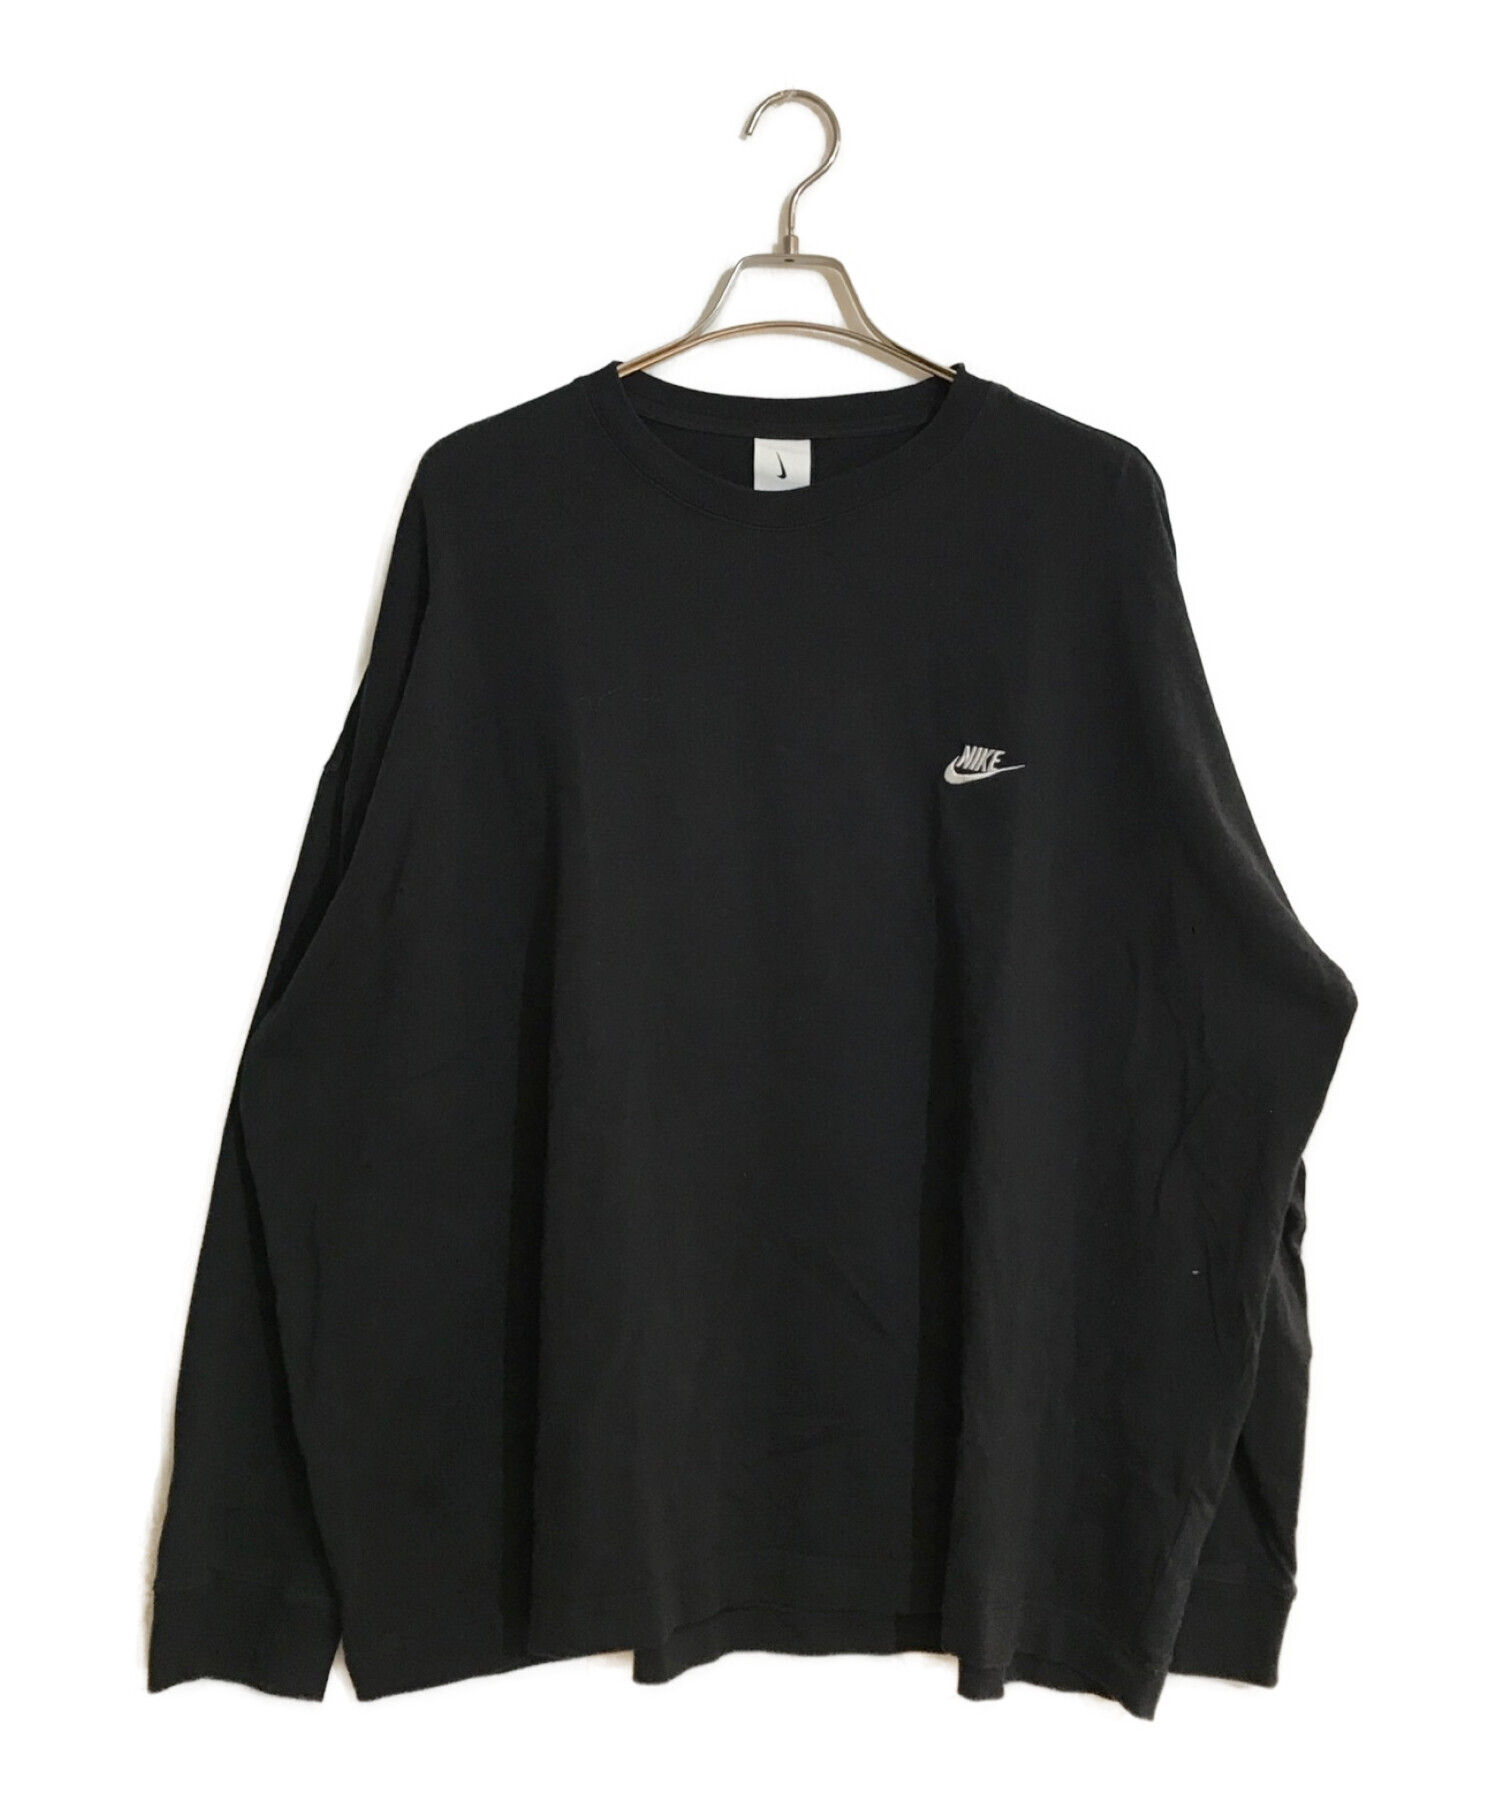 NIKE (ナイキ) PEACEMINUSONE (ピースマイナスワン) G-Dragon Long Sleeve  T-shirt/ジードラゴンロングスリーブティーシャツ ブラック サイズ:SIZE L